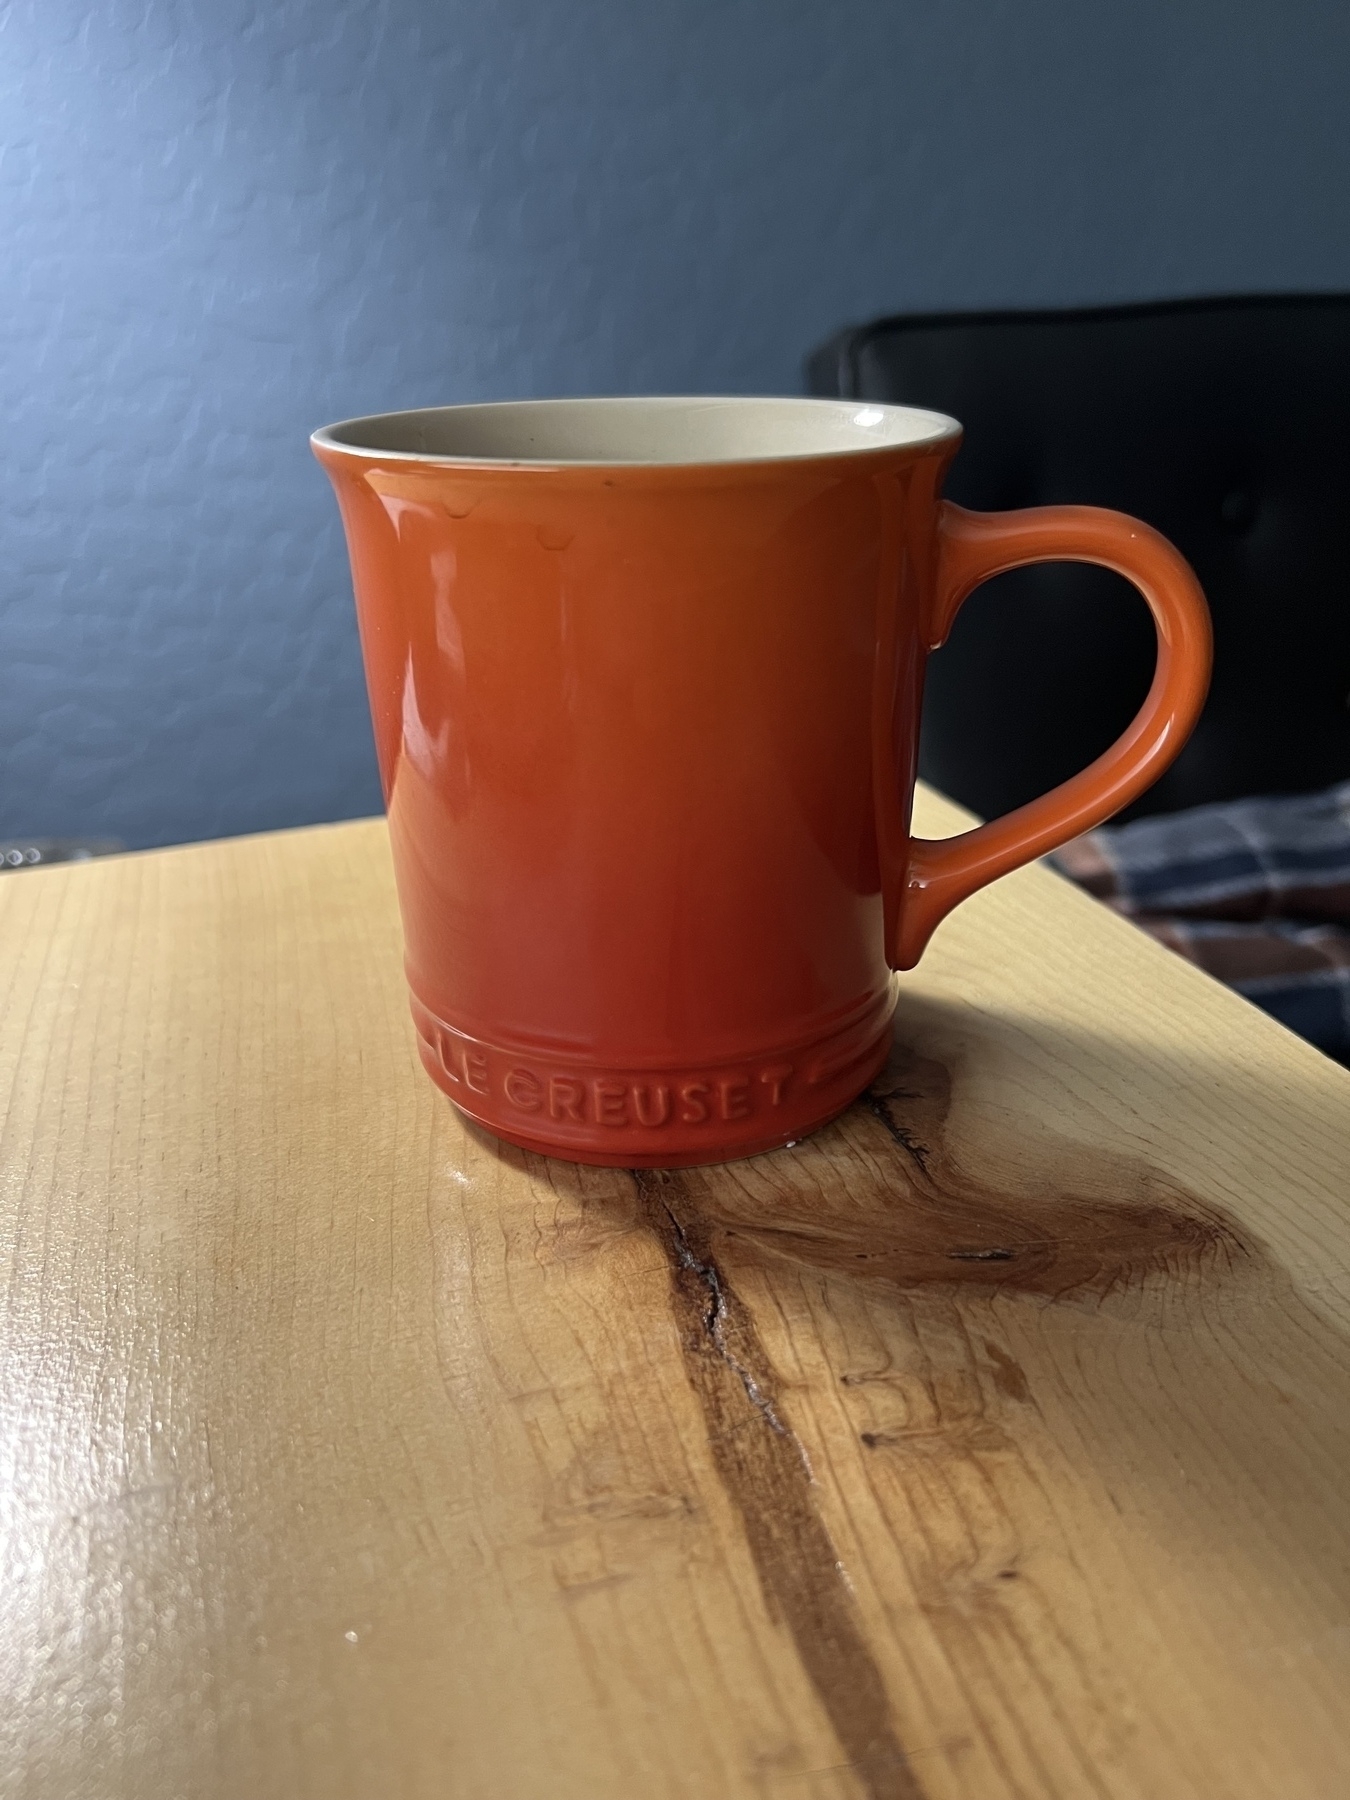 Orange coffee mug on side table